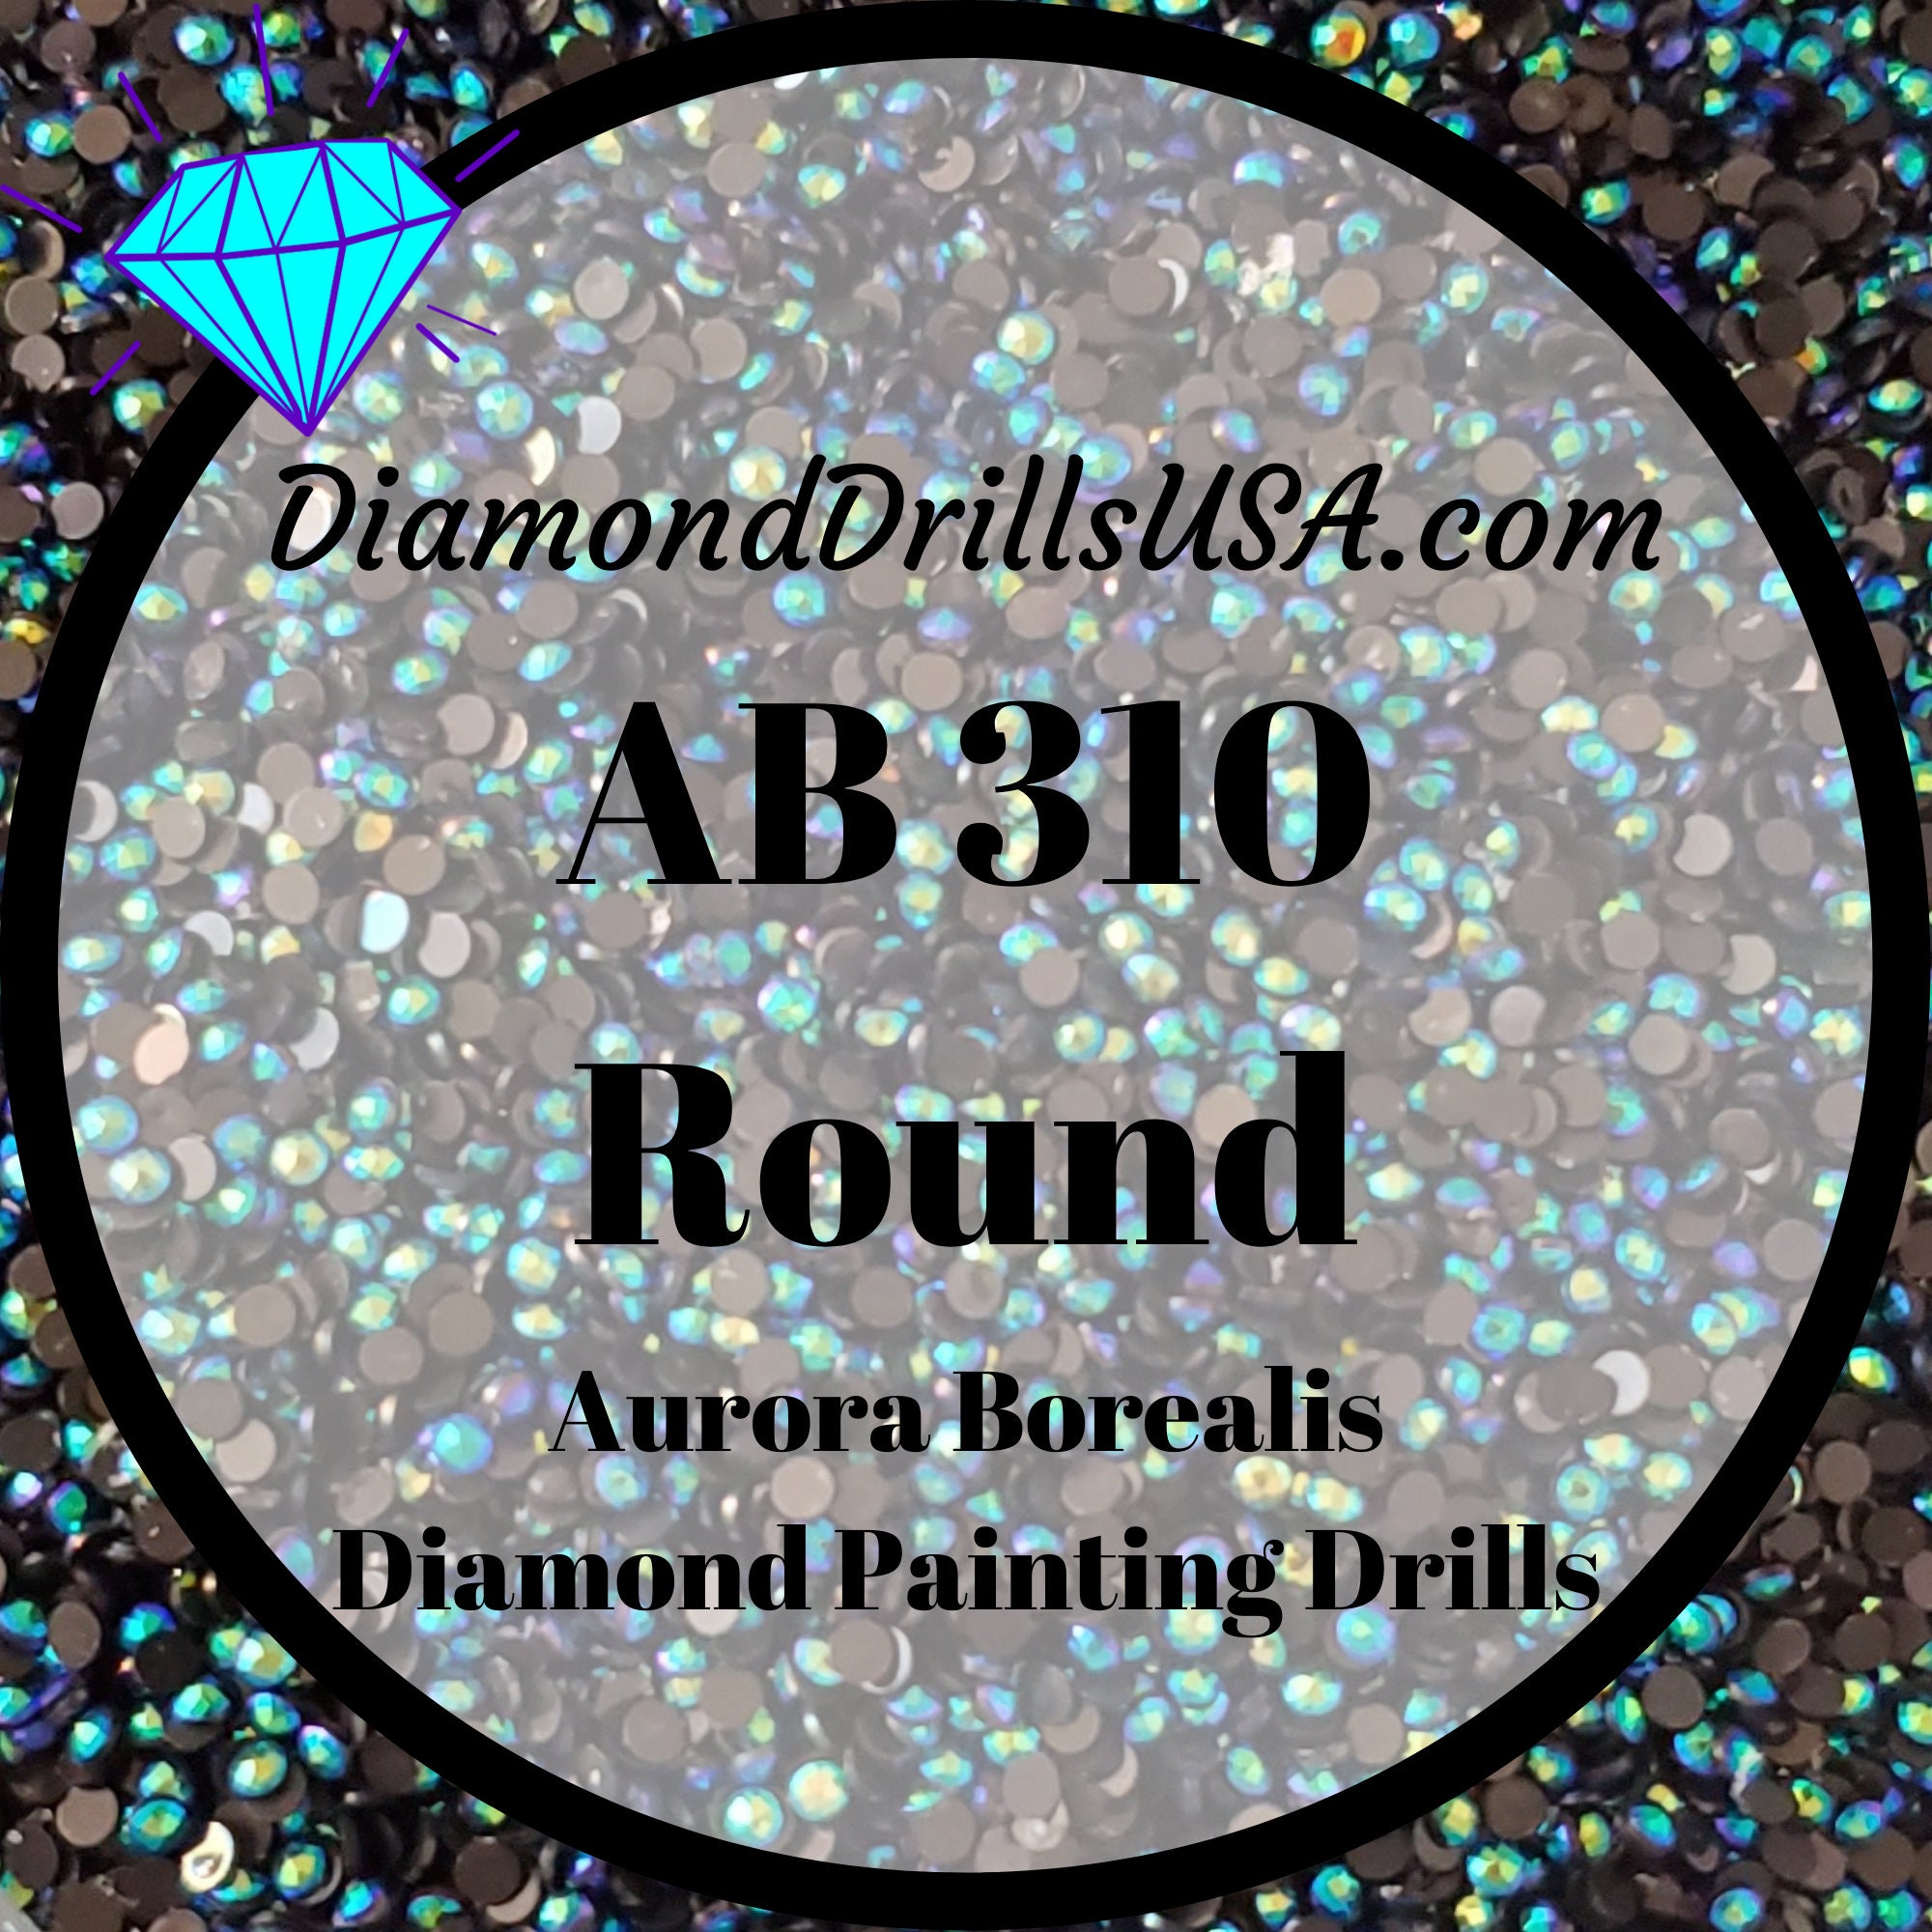 DiamondDrillsUSA - DMC 310 SQUARE 5D Diamond Painting Drills Beads